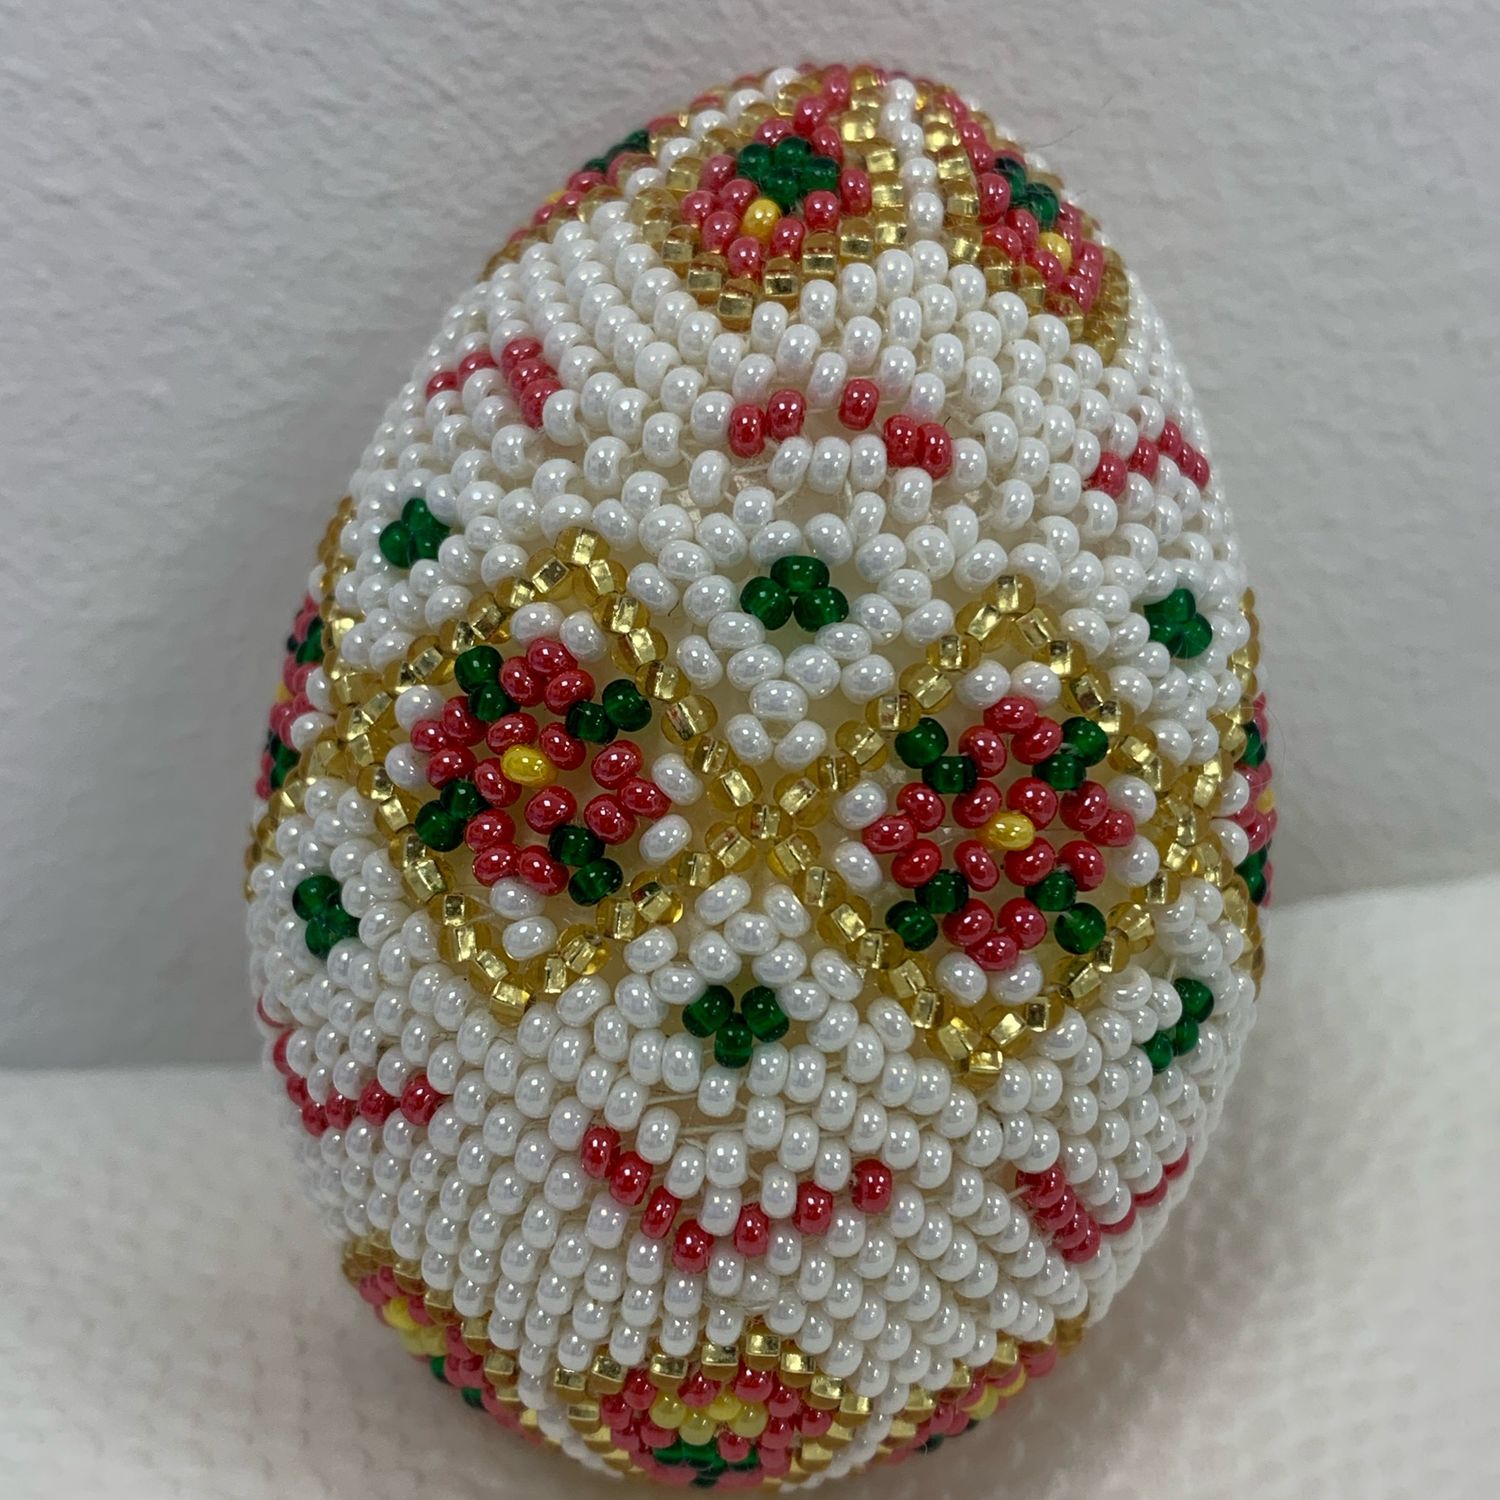 Пасхальные яйца из бисера: схемы плетения, мастер-класс